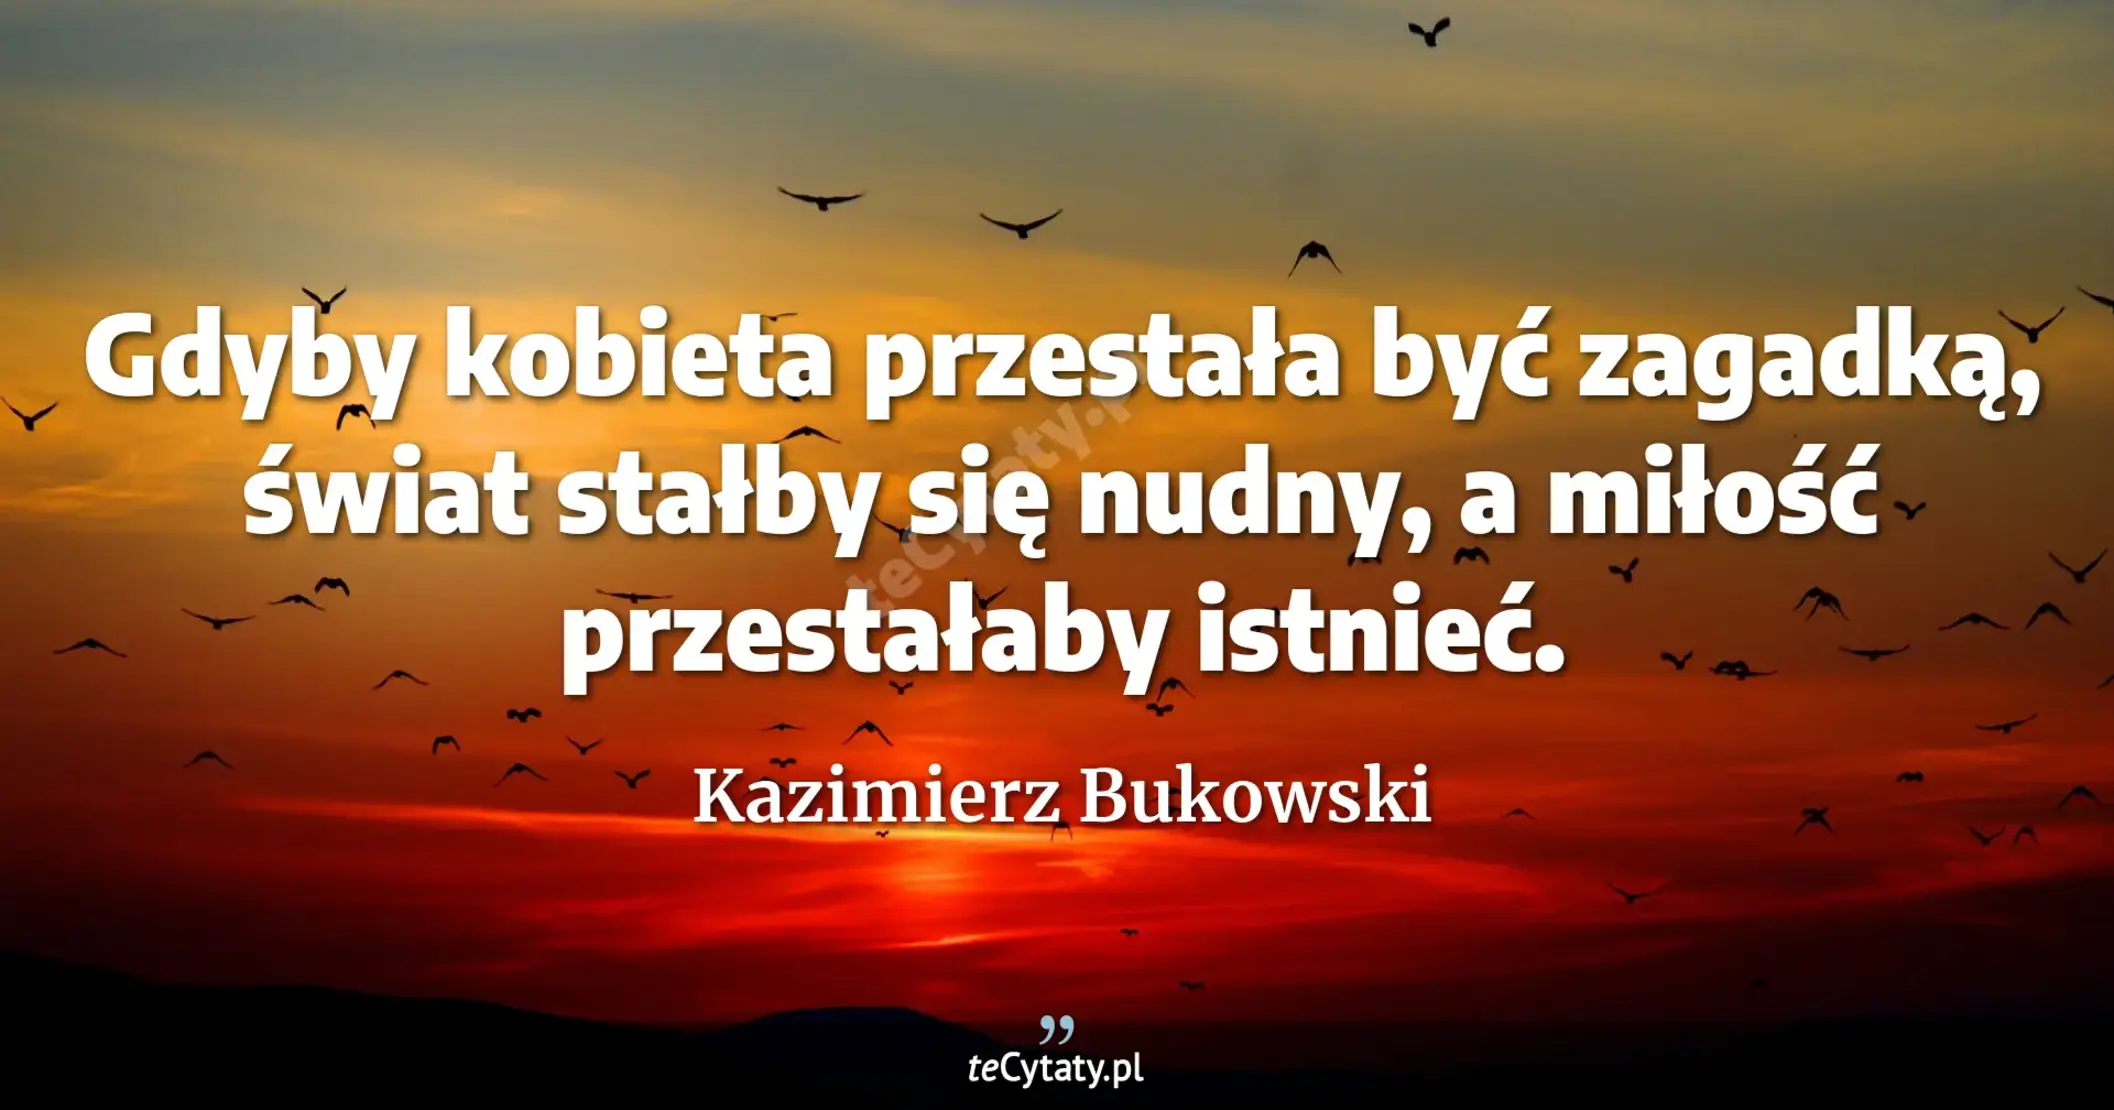 Gdyby kobieta przestała być zagadką, świat stałby się nudny, a miłość przestałaby istnieć. - Kazimierz Bukowski